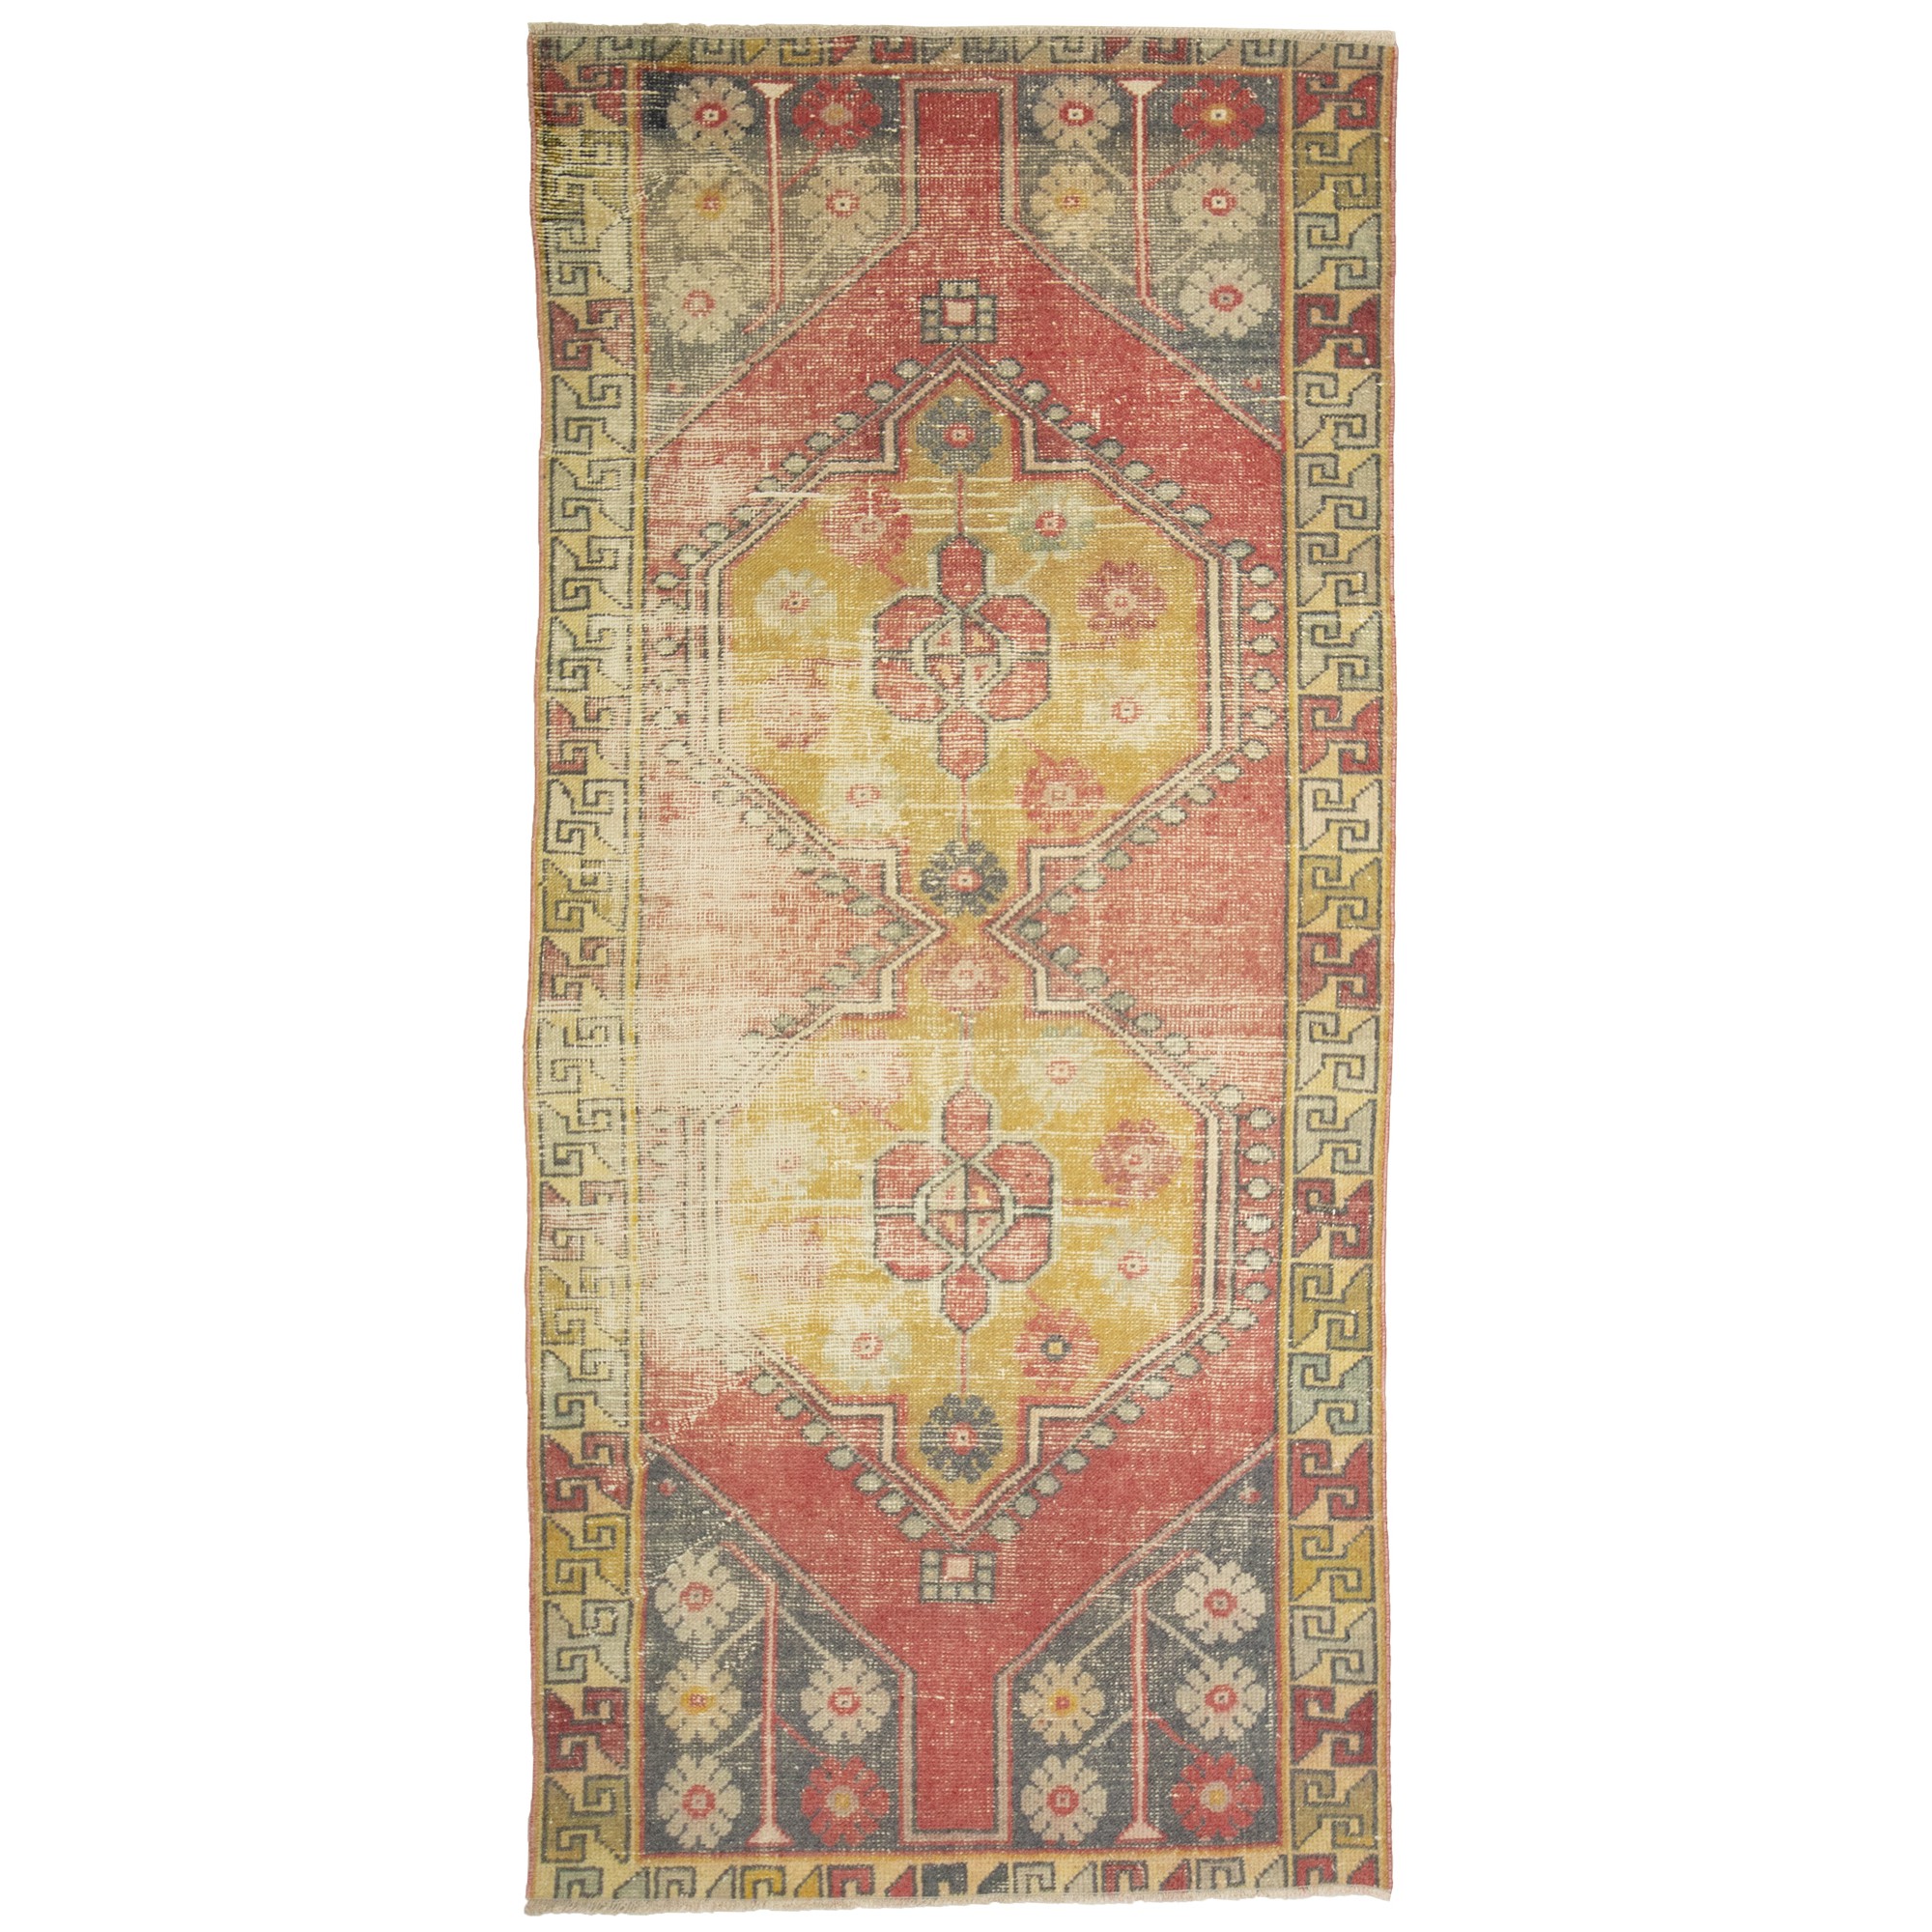 3550  116,241 - Turkish Carpet Rug 